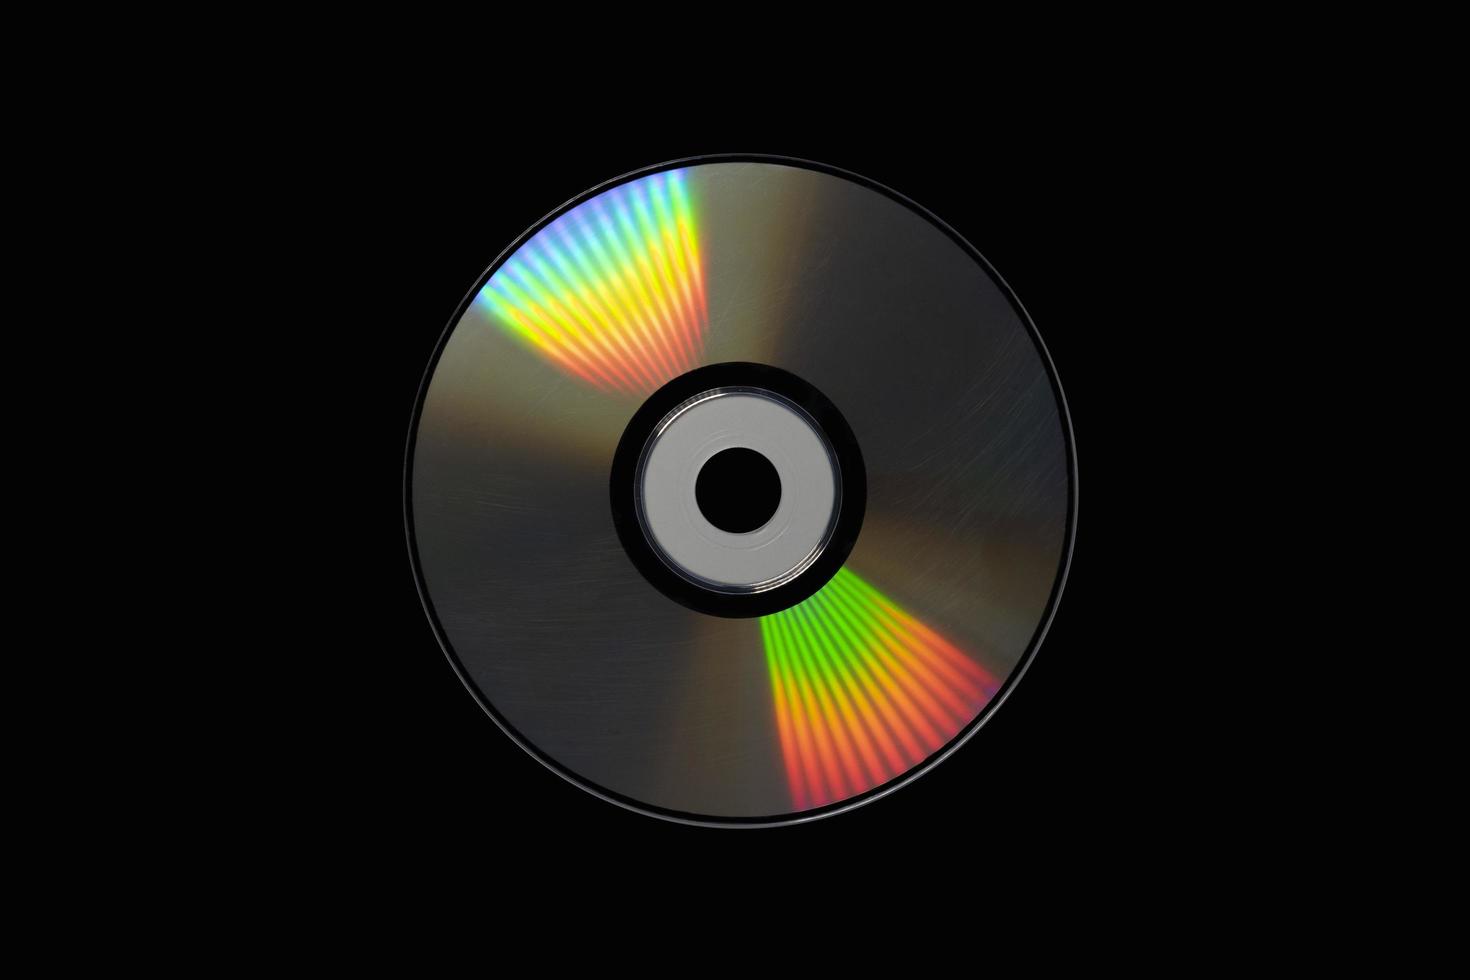 cd o dvd, almacenamiento de datos de tecnología de la información. grabación de música y películas. lado holográfico del disco compacto. un disco compacto aislado sobre fondo negro. foto